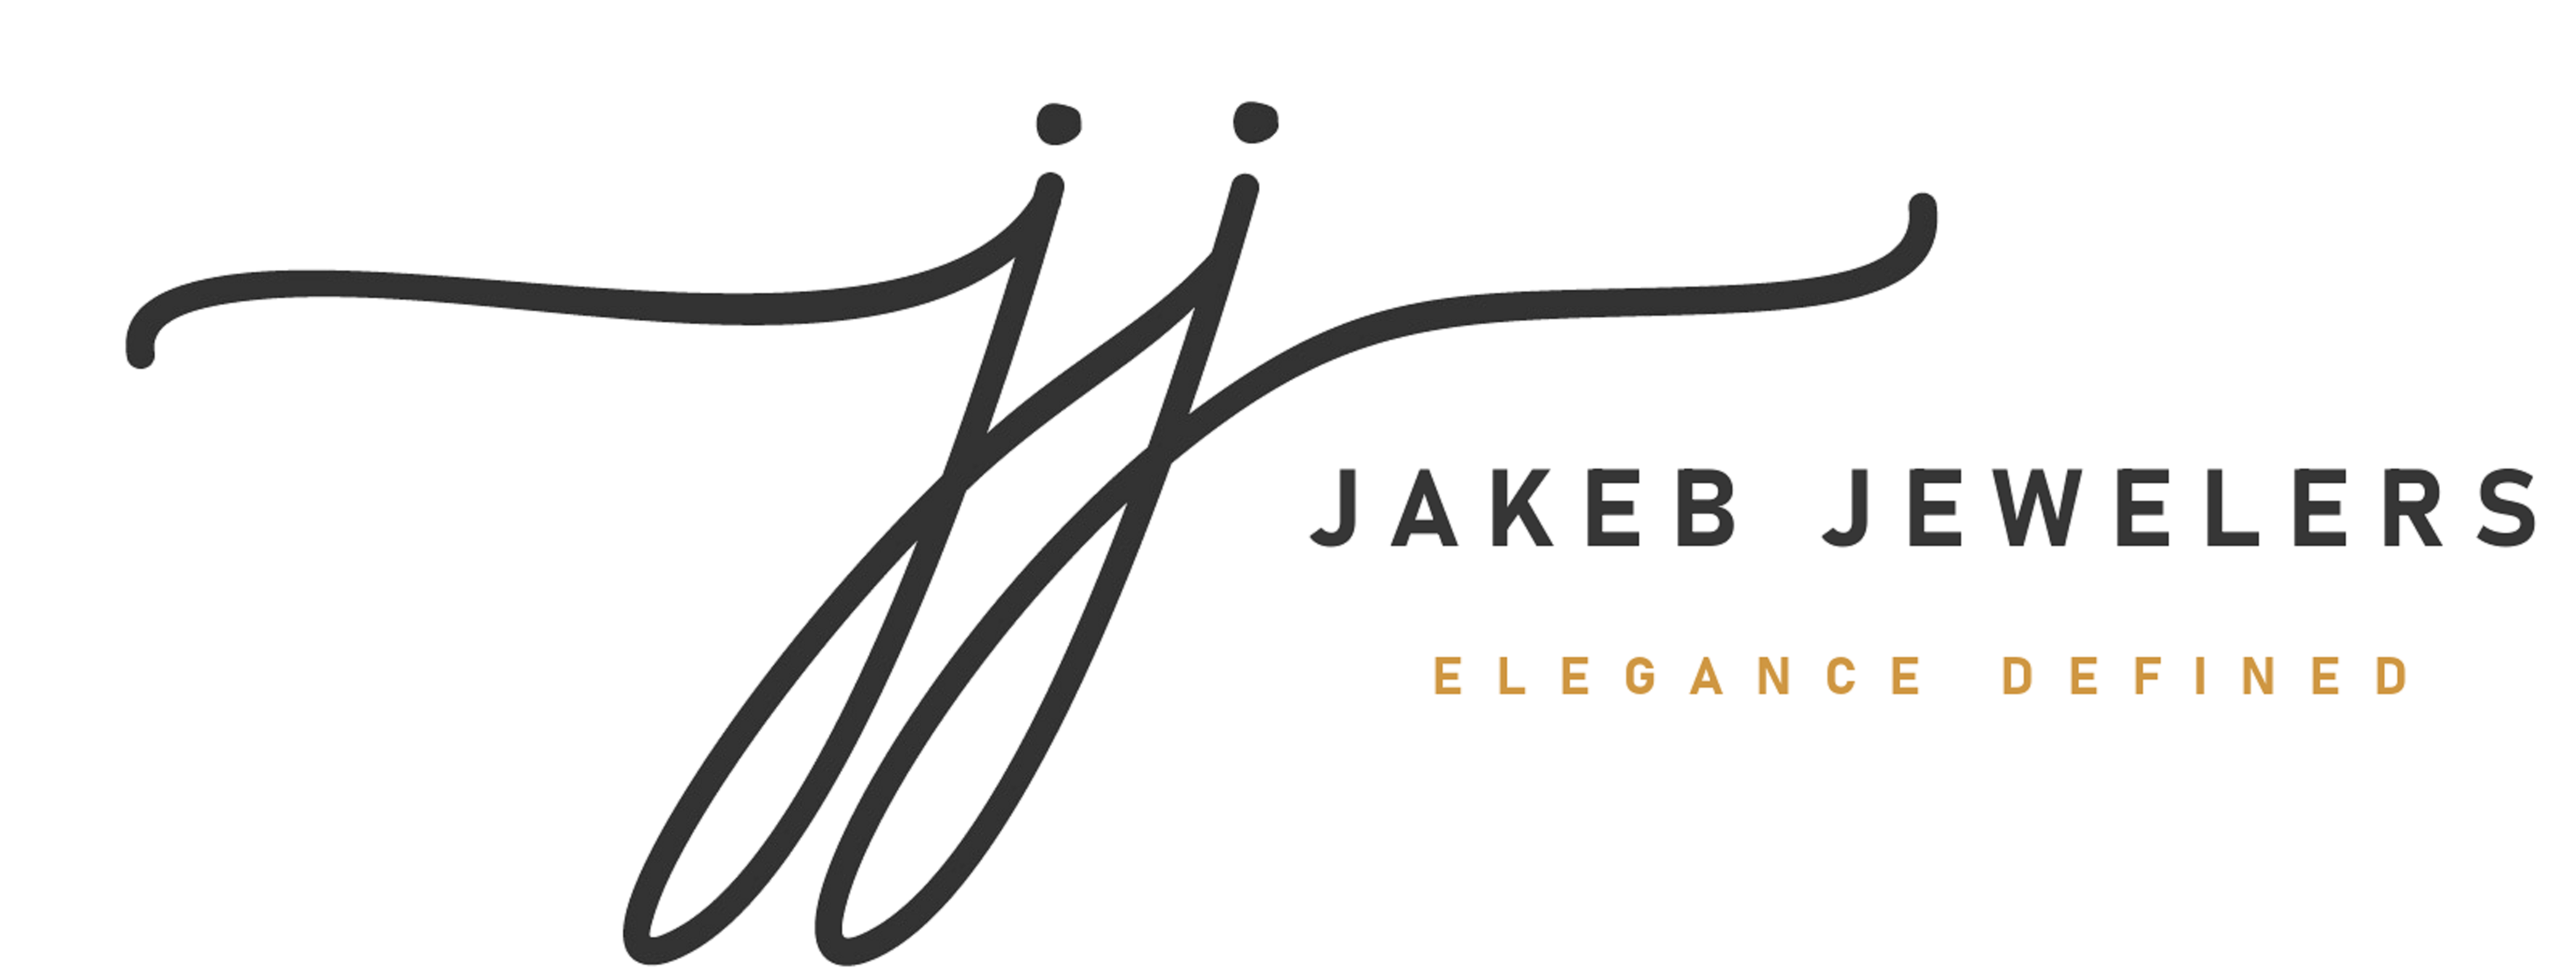 Jakeb Jewelers